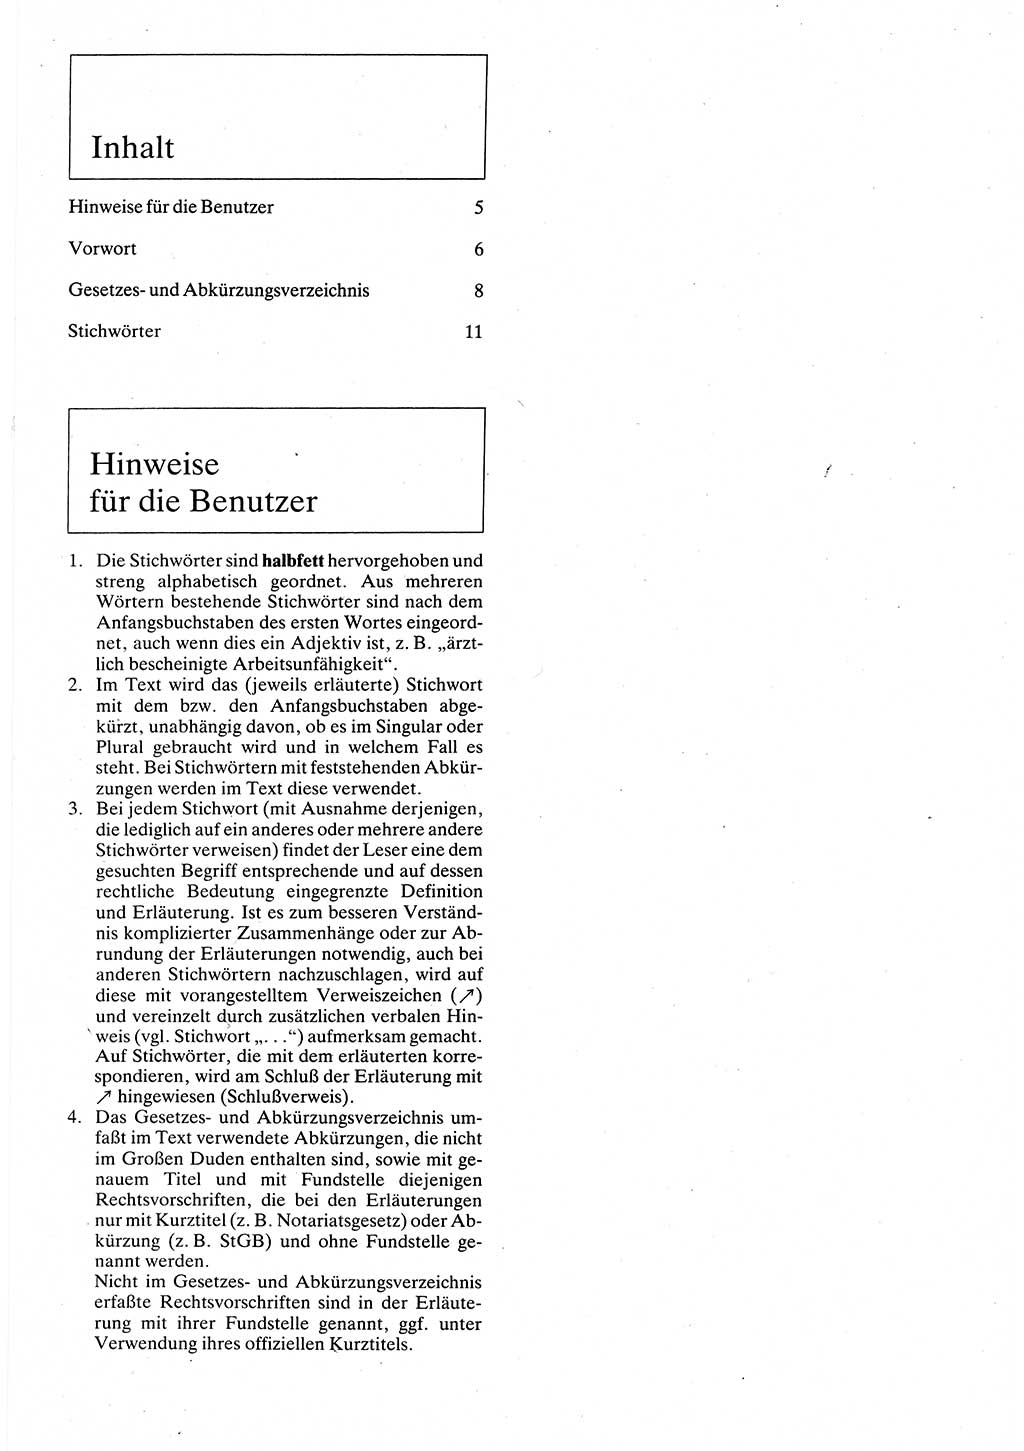 Rechtslexikon [Deutsche Demokratische Republik (DDR)] 1988, Seite 5 (Rechtslex. DDR 1988, S. 5)